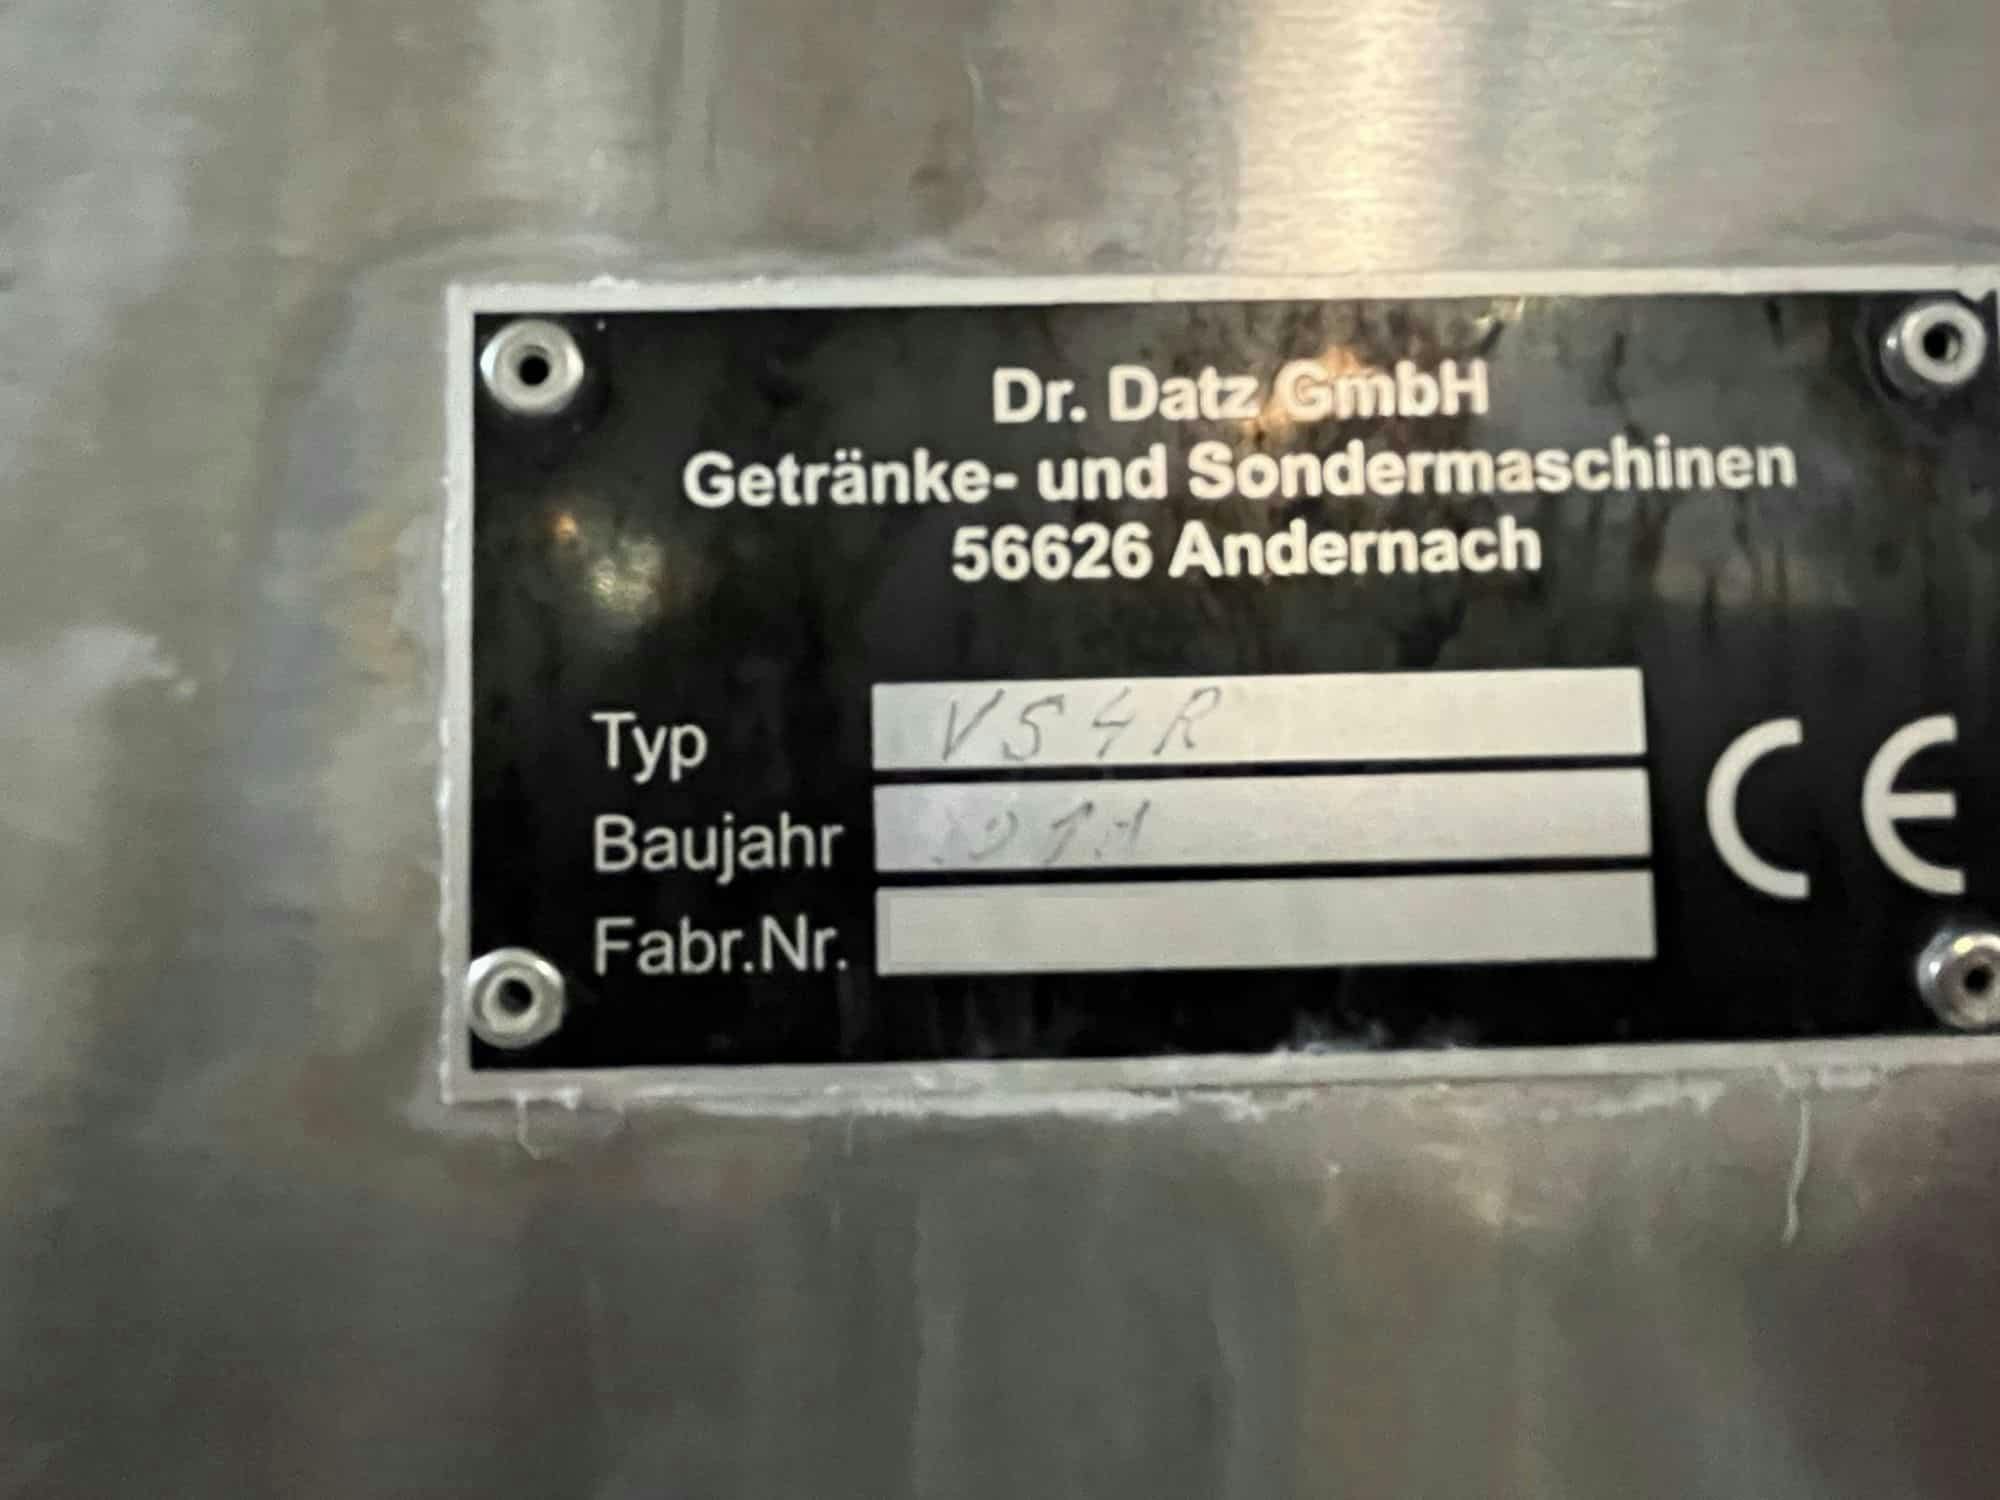 Targa dati of Dr. Datz GmbH VS4R